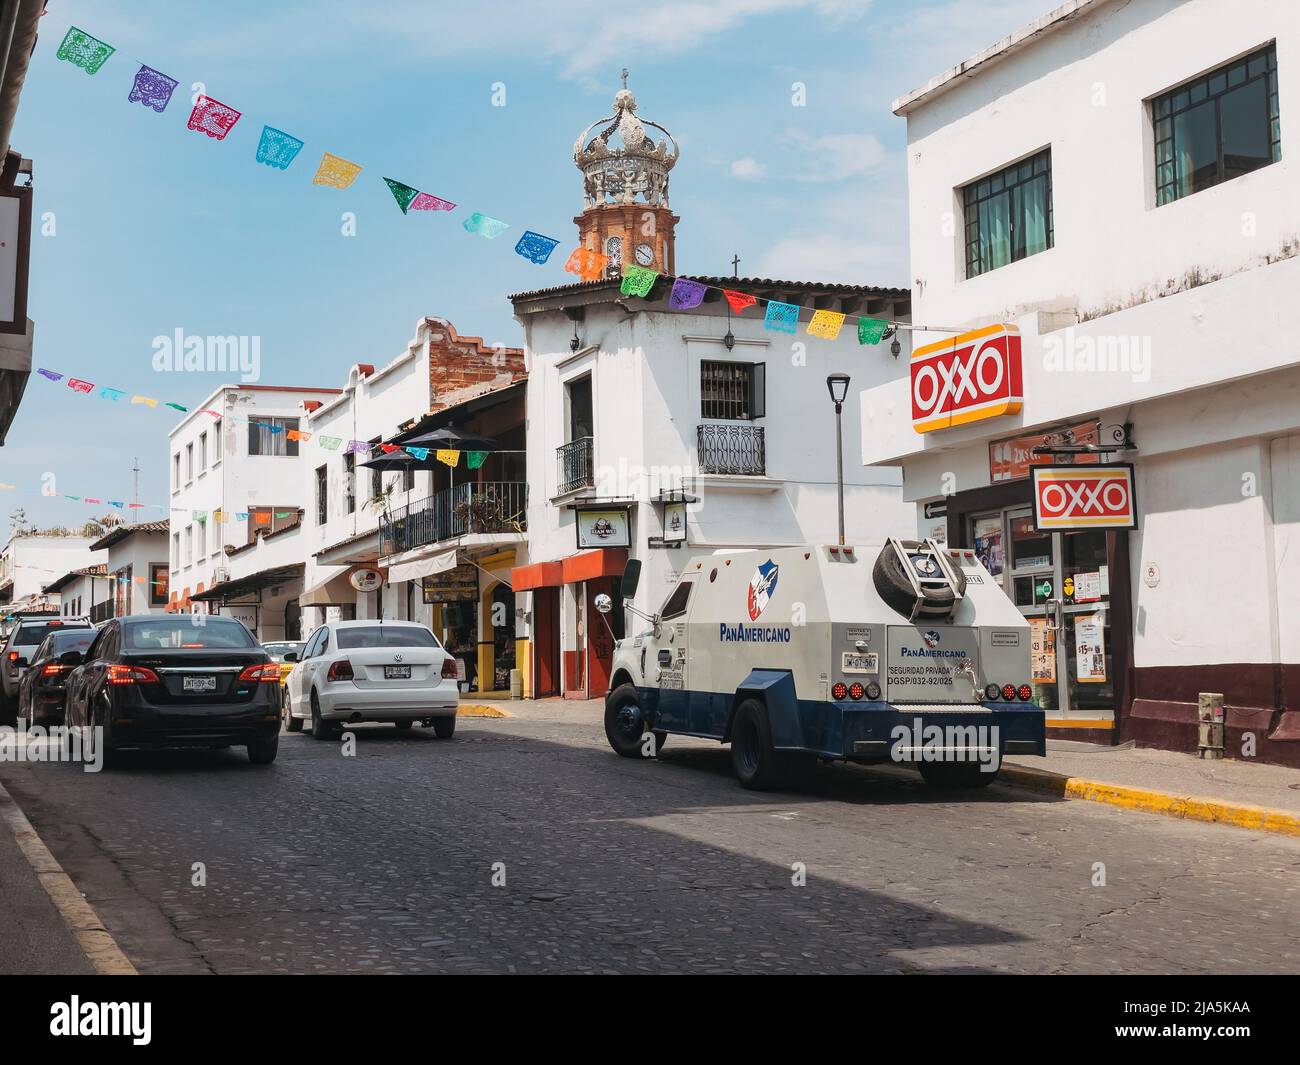 Véhicule de sécurité blindé transportant de l'argent, garé à l'extérieur d'un dépanneur Oxxo dans la ville de Puerto Vallarta, Jalisco, Mexique Banque D'Images